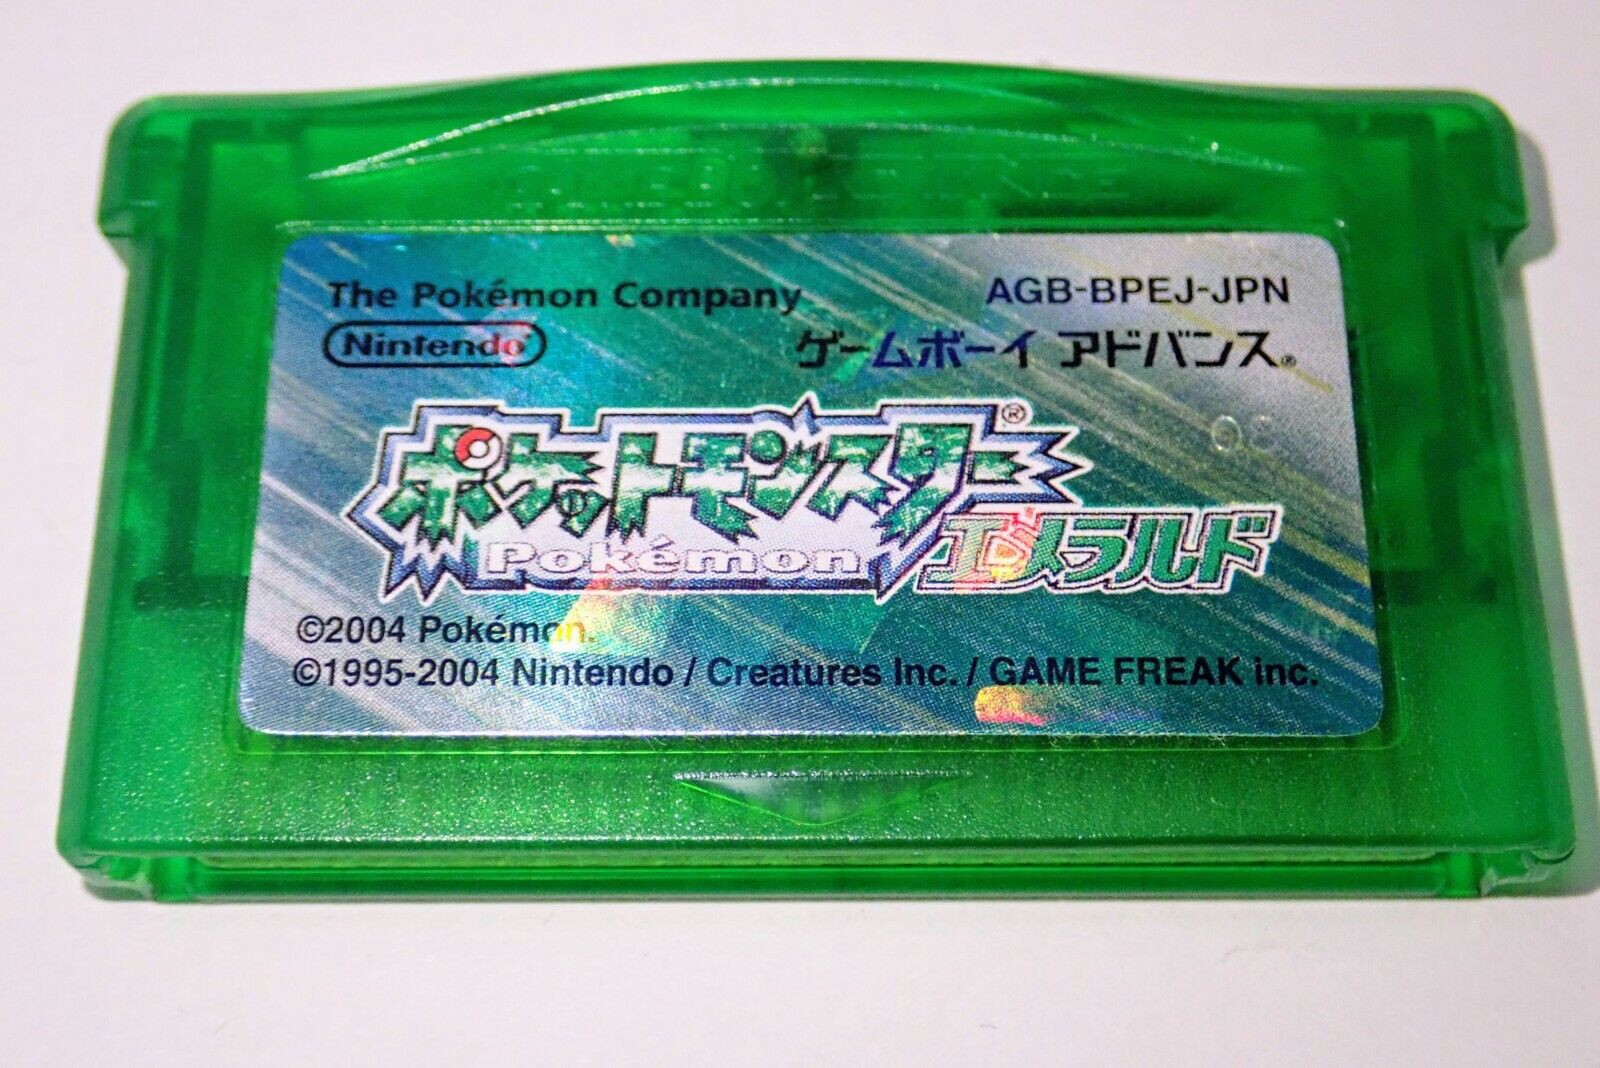 Jogo Pokémon Emerald Version GameBoy Advance